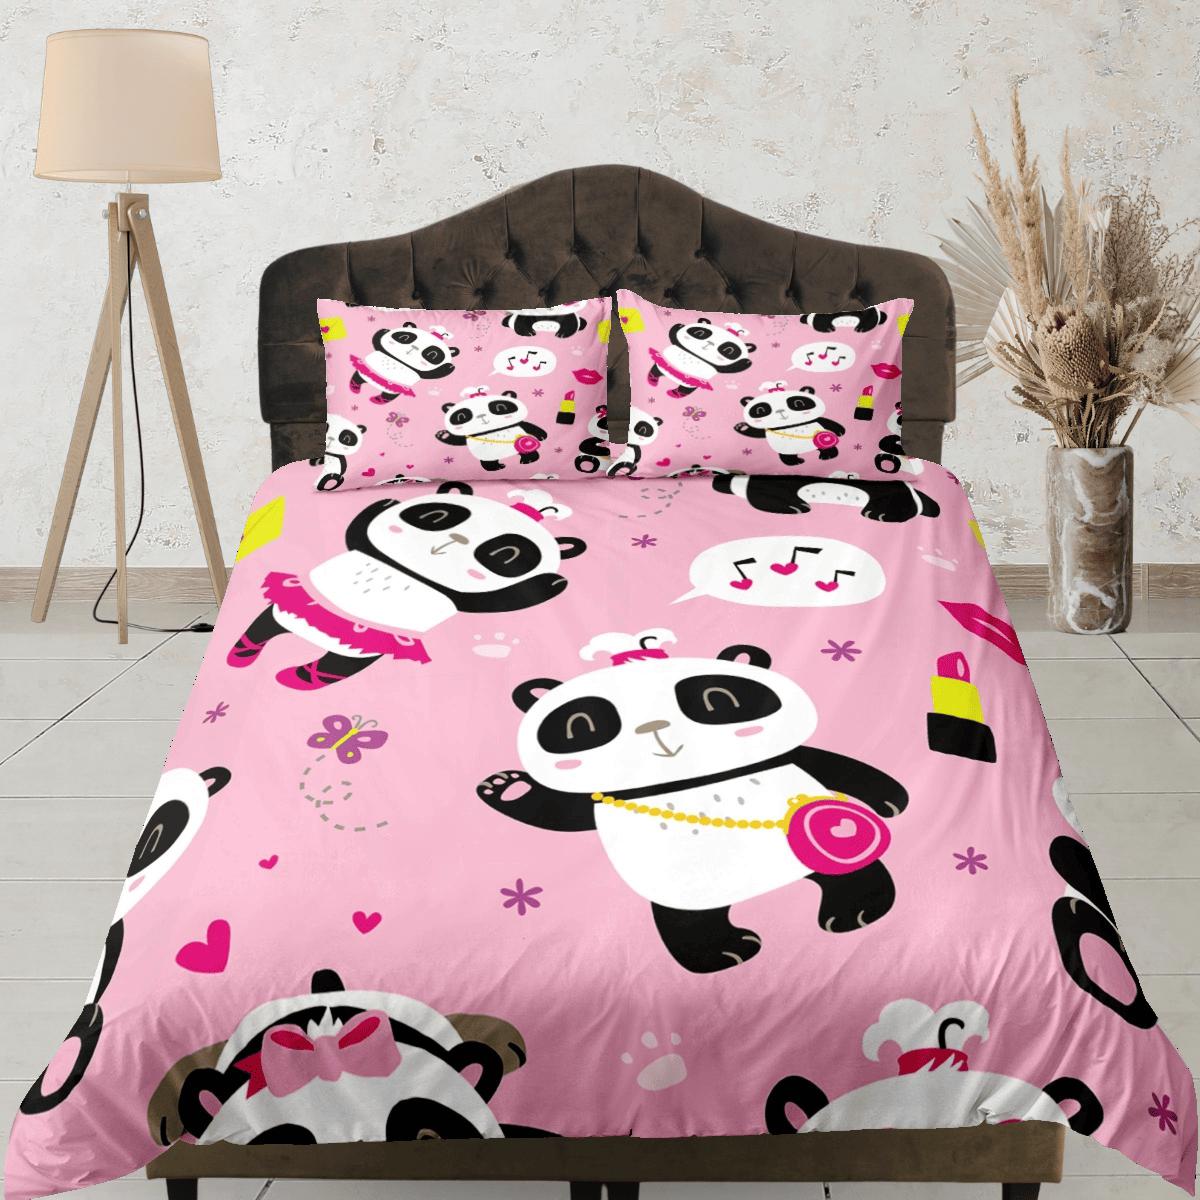 daintyduvet Girly panda pink duvet cover for kids, bedding set full, king, queen, dorm bedding, toddler bedding, aesthetic bedspread, panda lovers gift